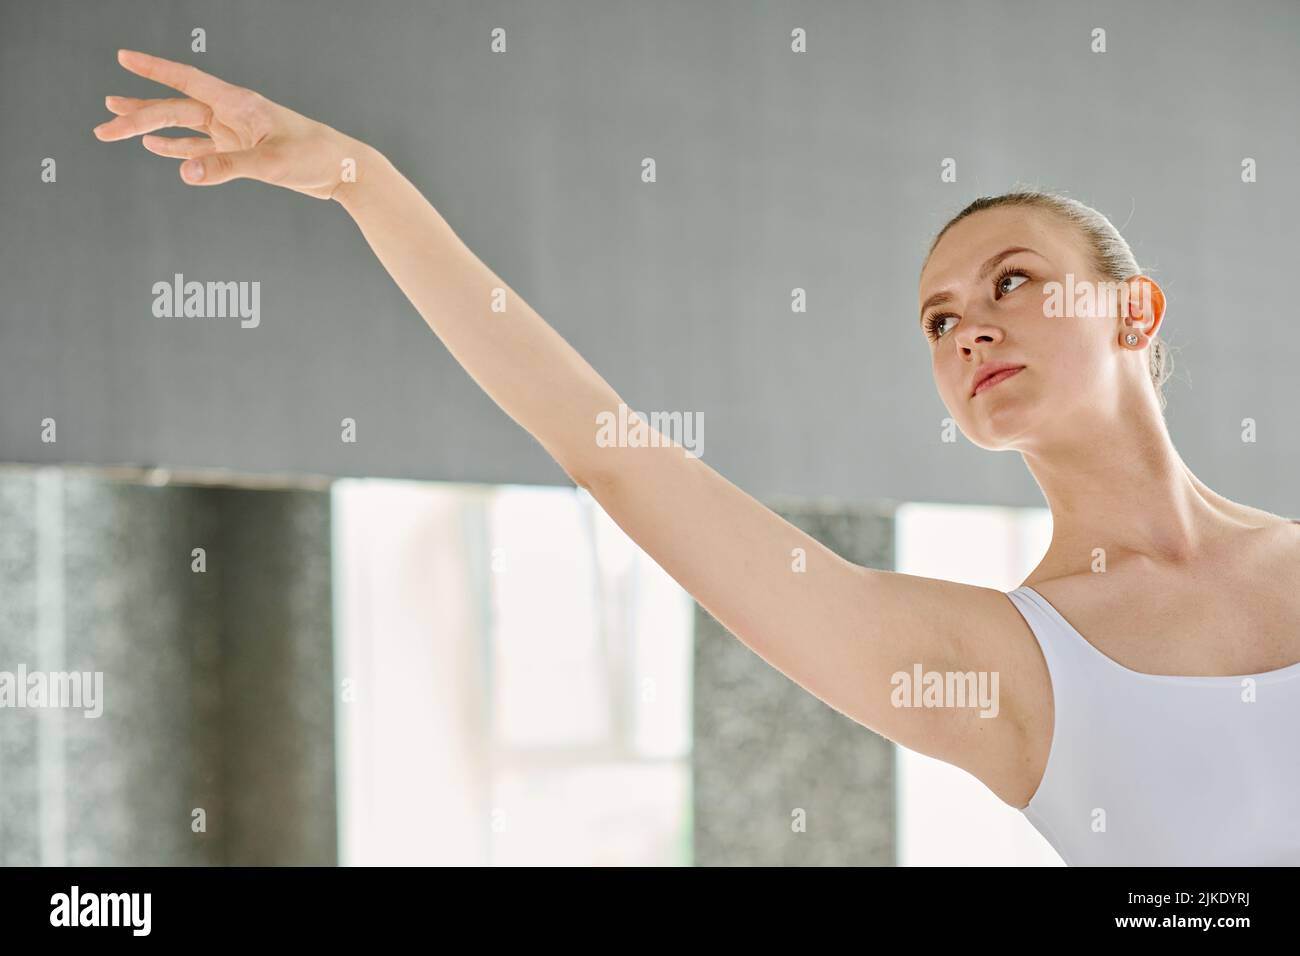 Joven bailarina elegante con brazo extendido mirando hacia adelante durante la actuación en el escenario o la repetición en el aula Foto de stock